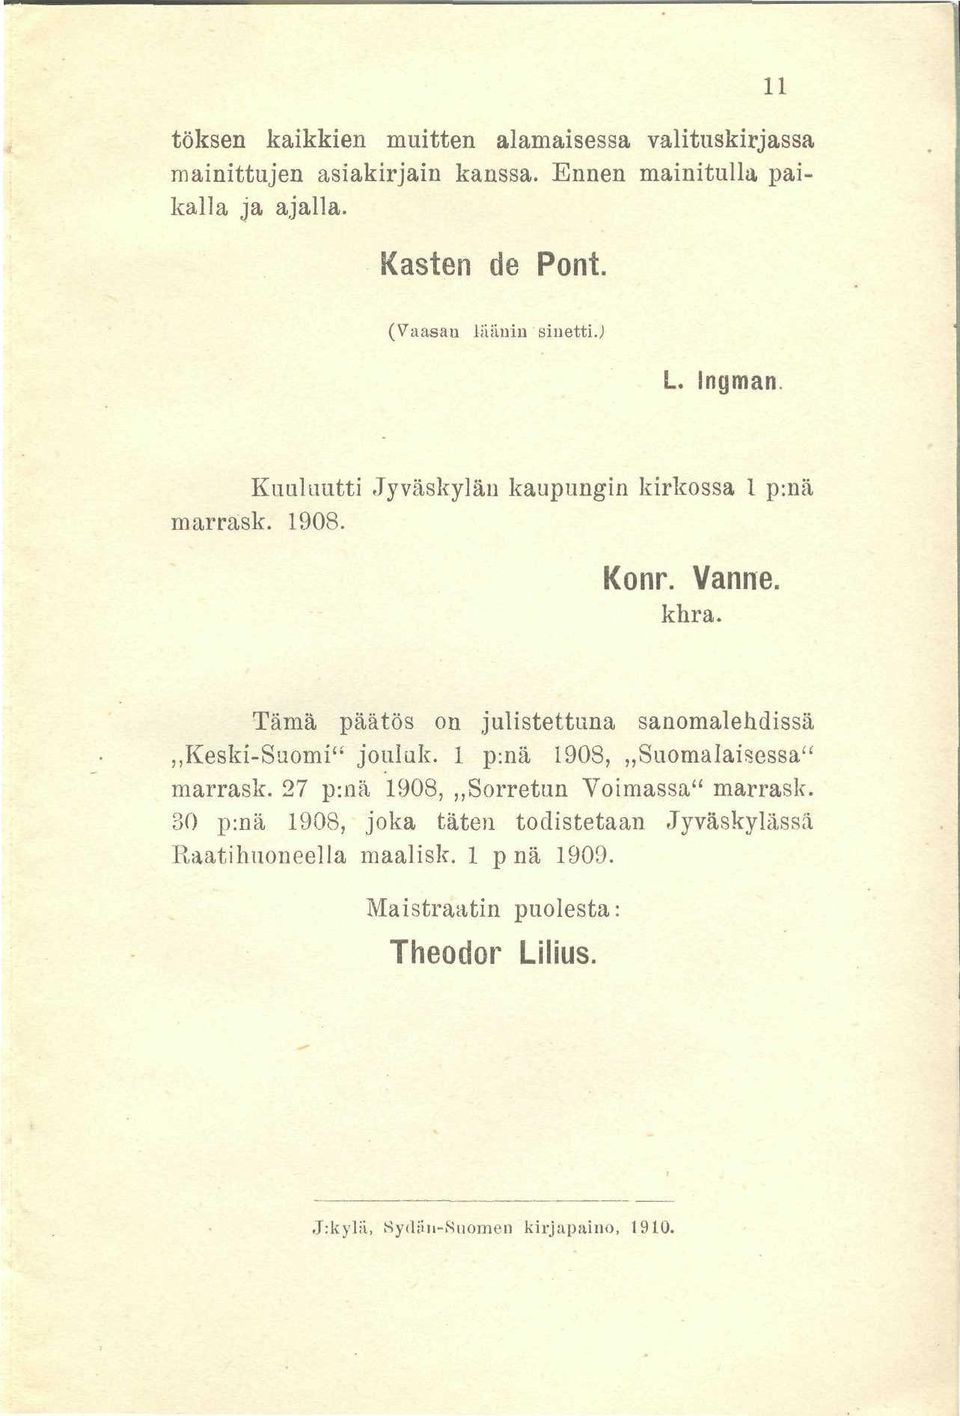 Tämä päätös on julistettuna sanomalehdissä,,keski-suomi" jouluk. 1 p:nä 1908,,,Suomalaisessa" marrask.